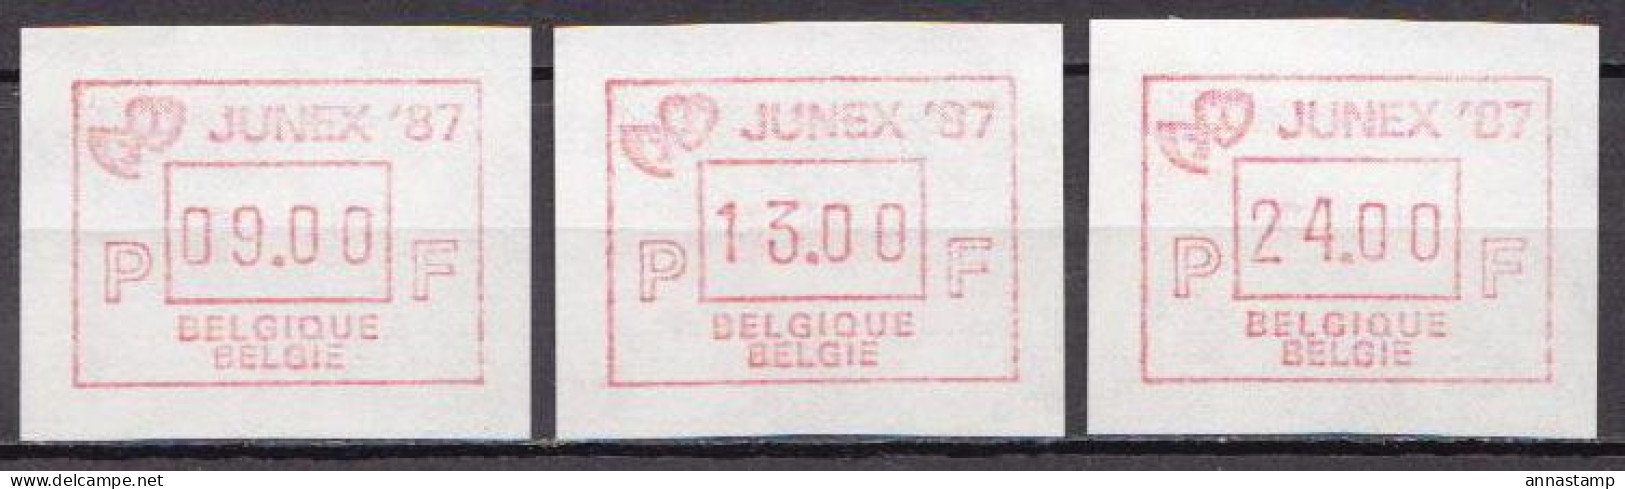 Belgium MNH Stamps - 1980-1999